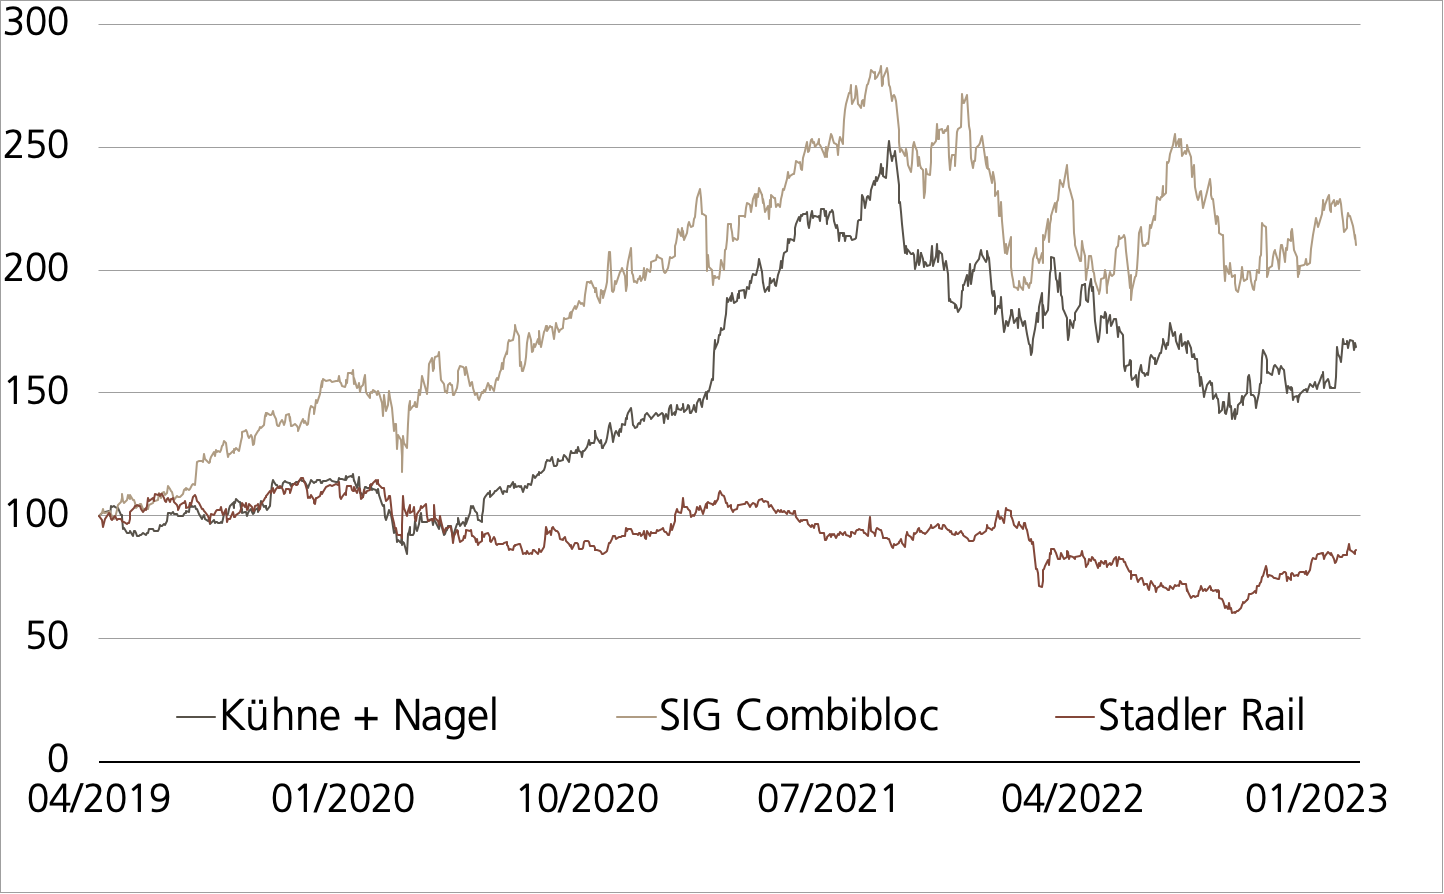 Kuehne + Nagel vs. SIG Combibloc vs. Stadler Rail